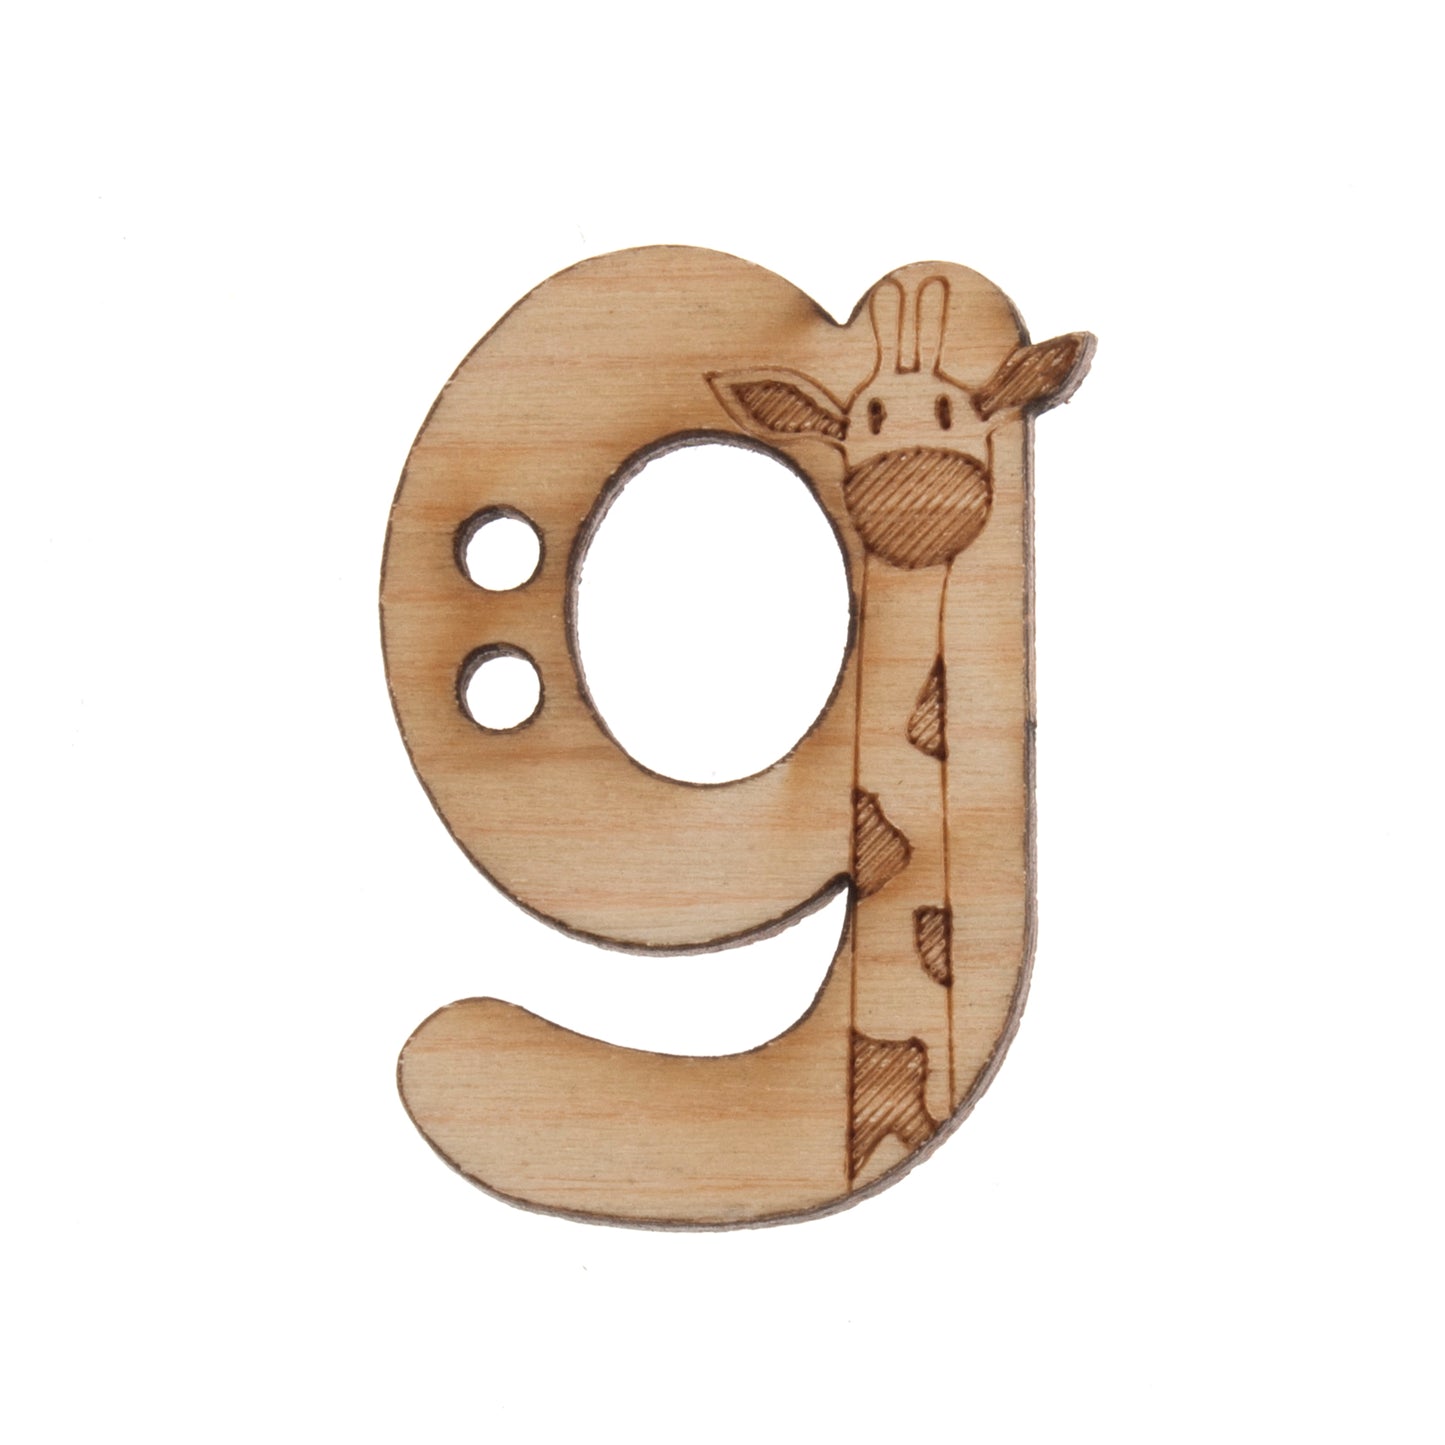 Wooden Alphabet Craft 2 Hole Button - 20mm - Letter G [LD21.3]